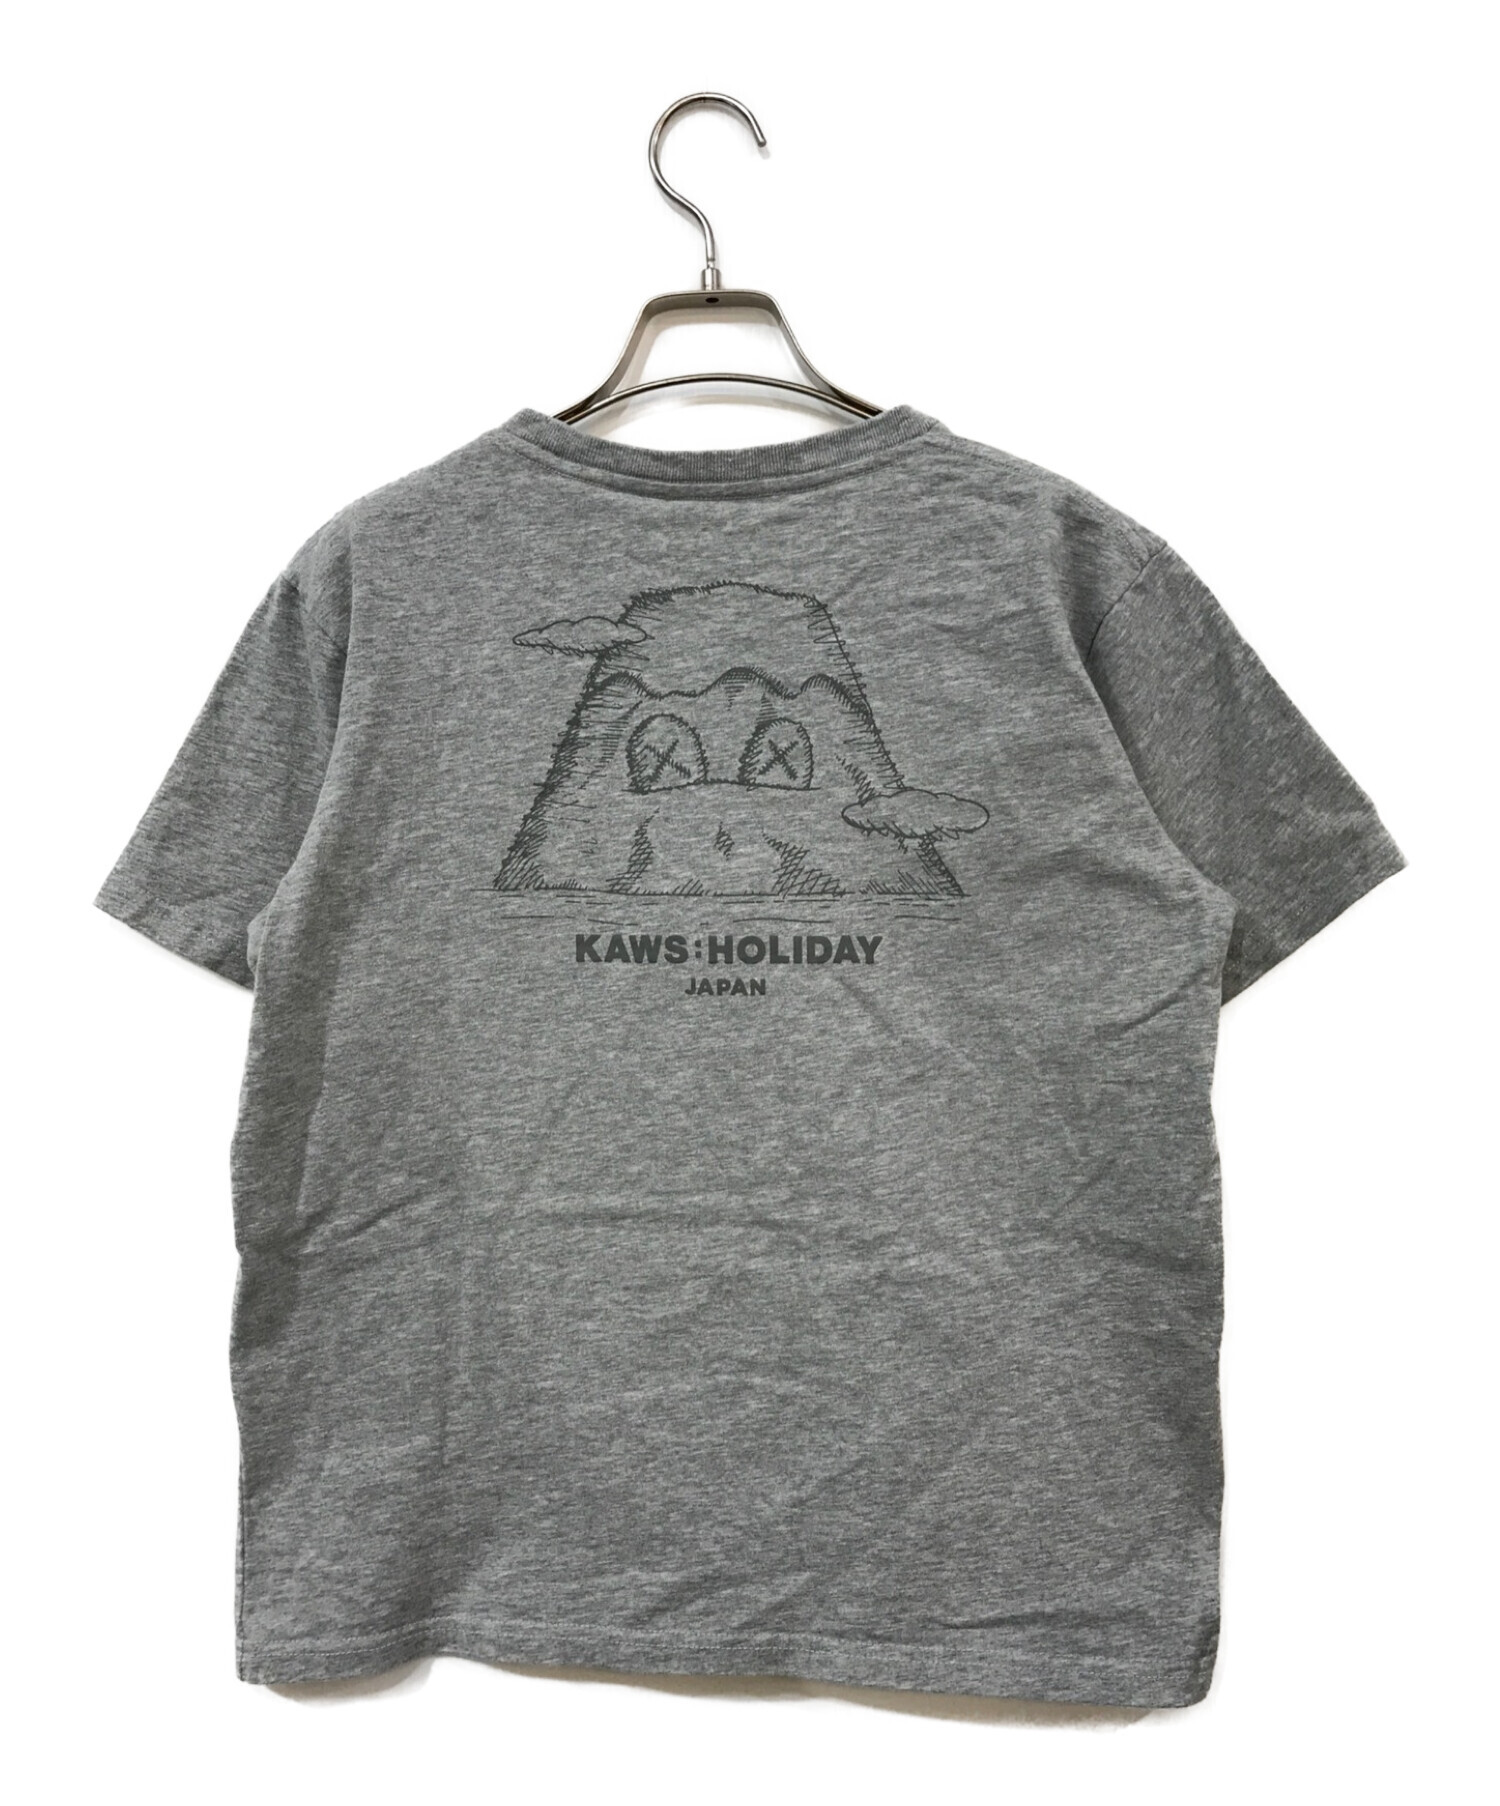 KAWS HOLIDAY (カウズ ホリデイ) ロゴ刺繍Tシャツ グレー サイズ:LARGE